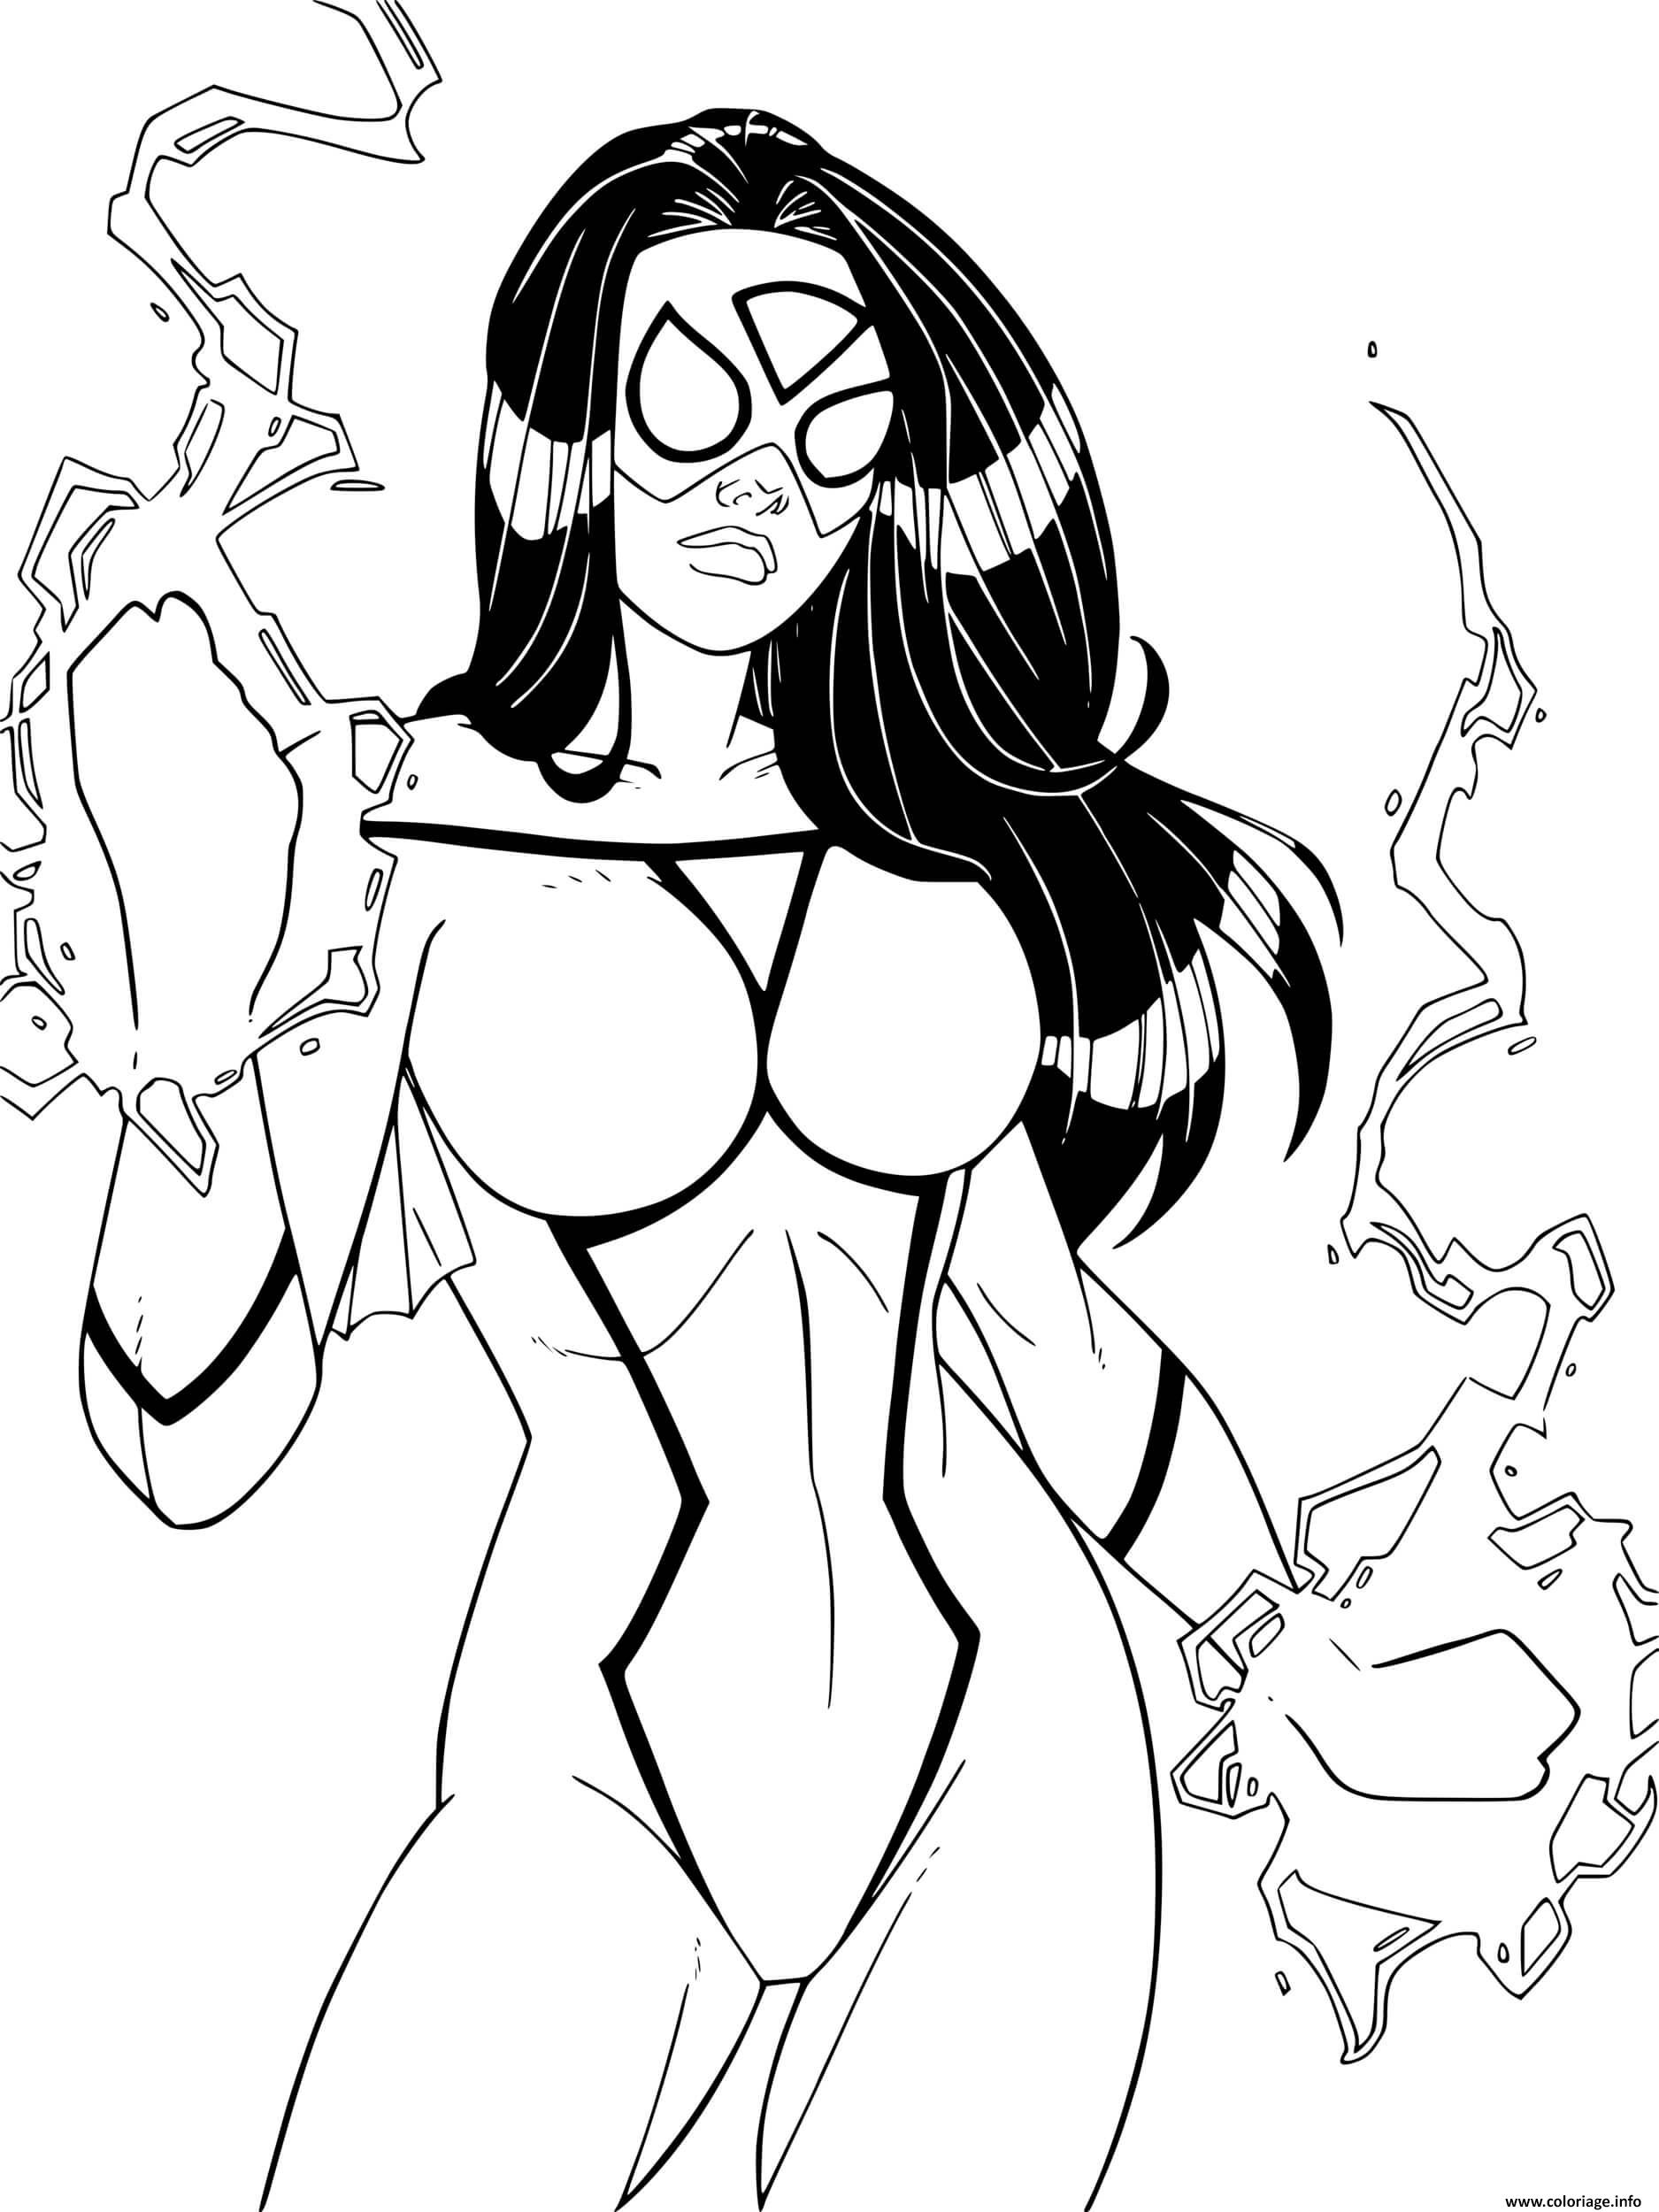 Dessin Super heroine spider woman par windriderx23 dc comics Coloriage Gratuit à Imprimer